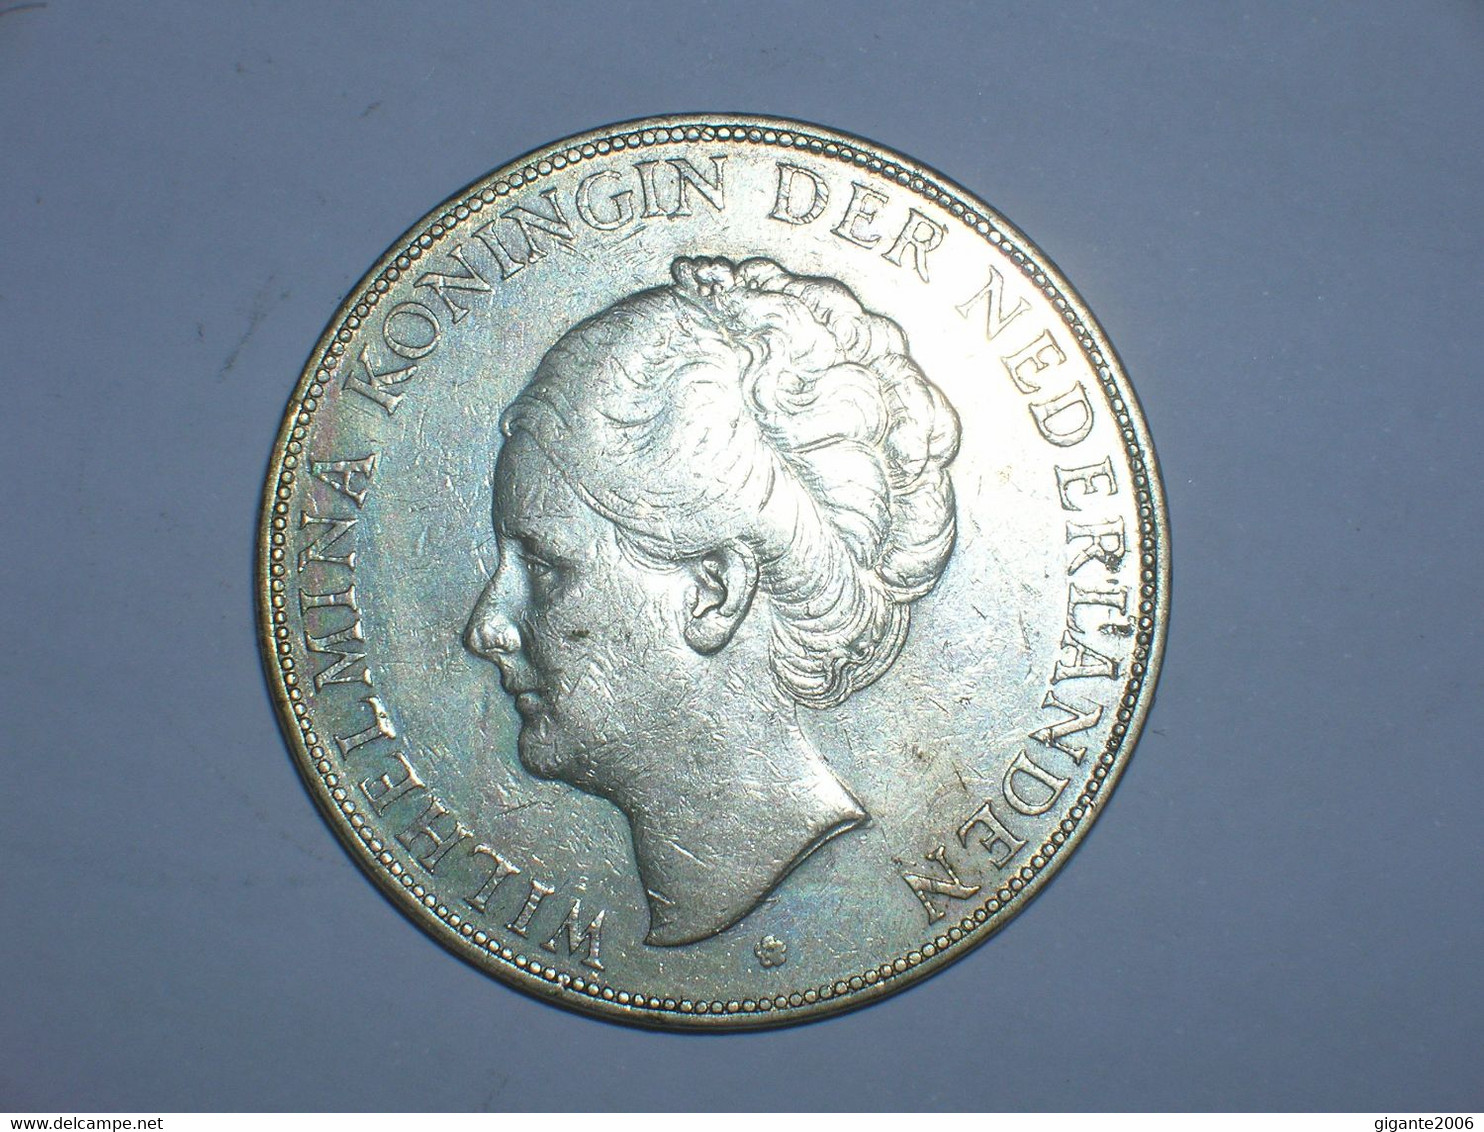 HOLANDA  2-1/2 Gulden 1930 (15) - 2 1/2 Gulden